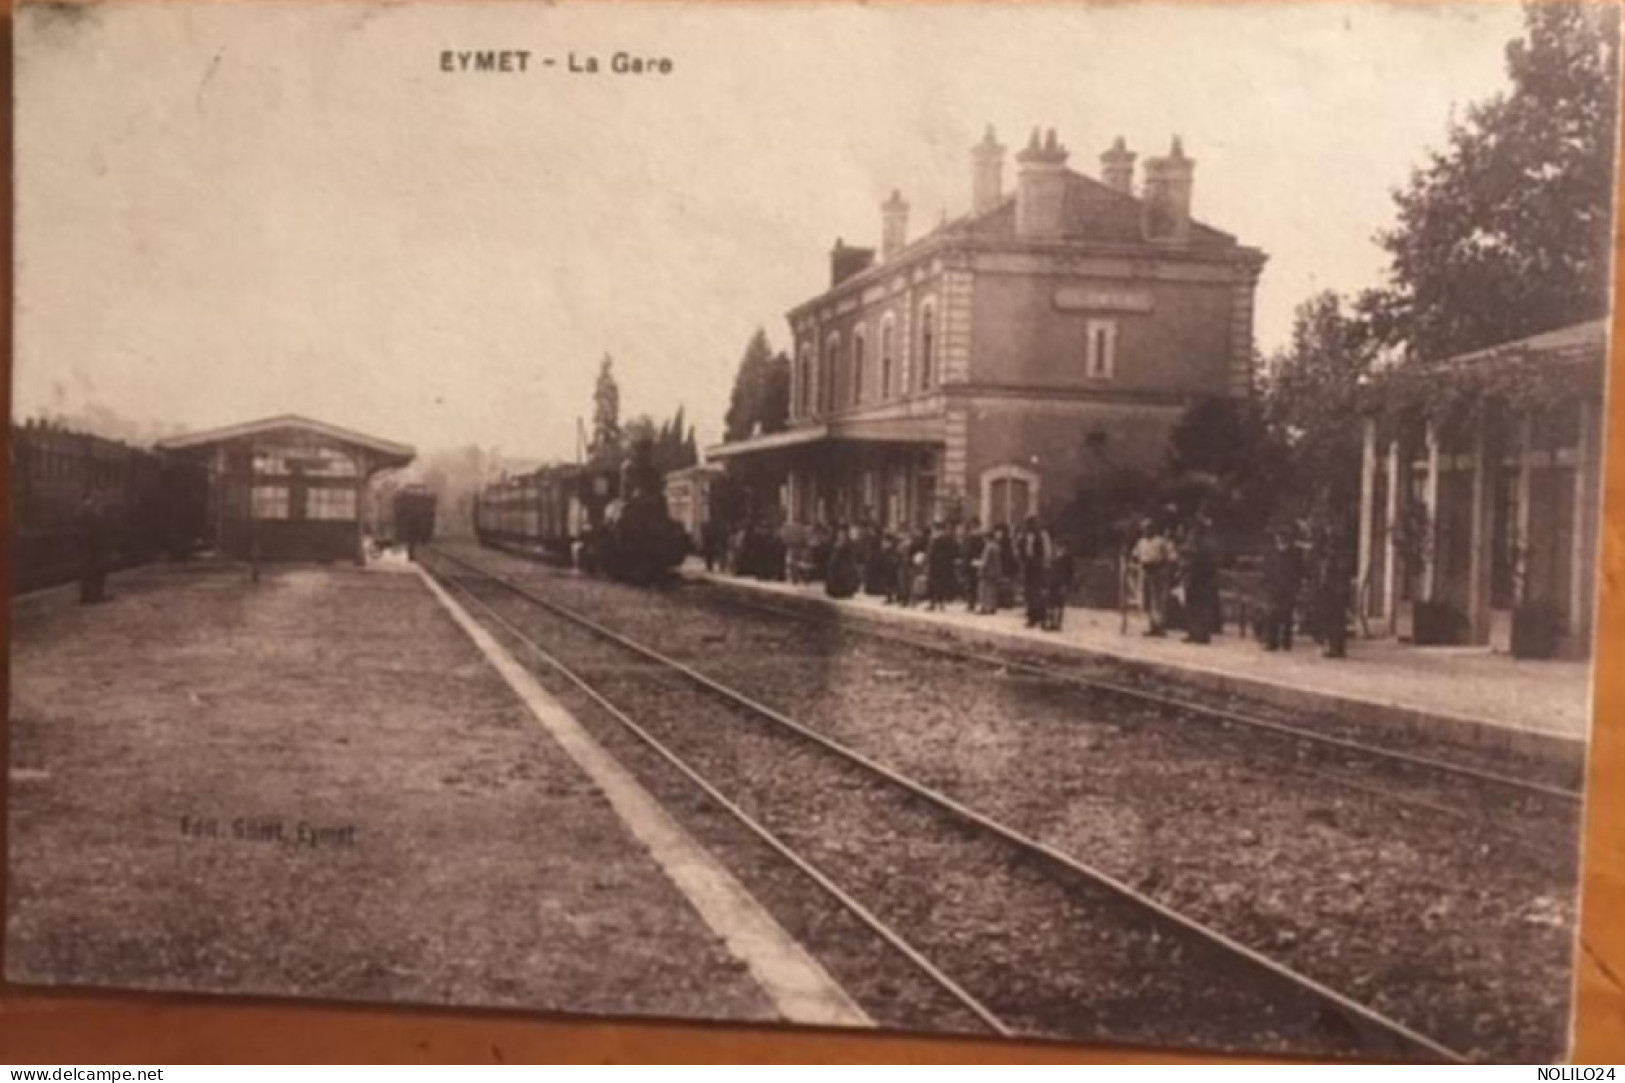 Cpa 24 Dordogne Eymet La Gare, Animée, Quais Locomotive Train, éd Gillet Circulé En 1915 - Eymet